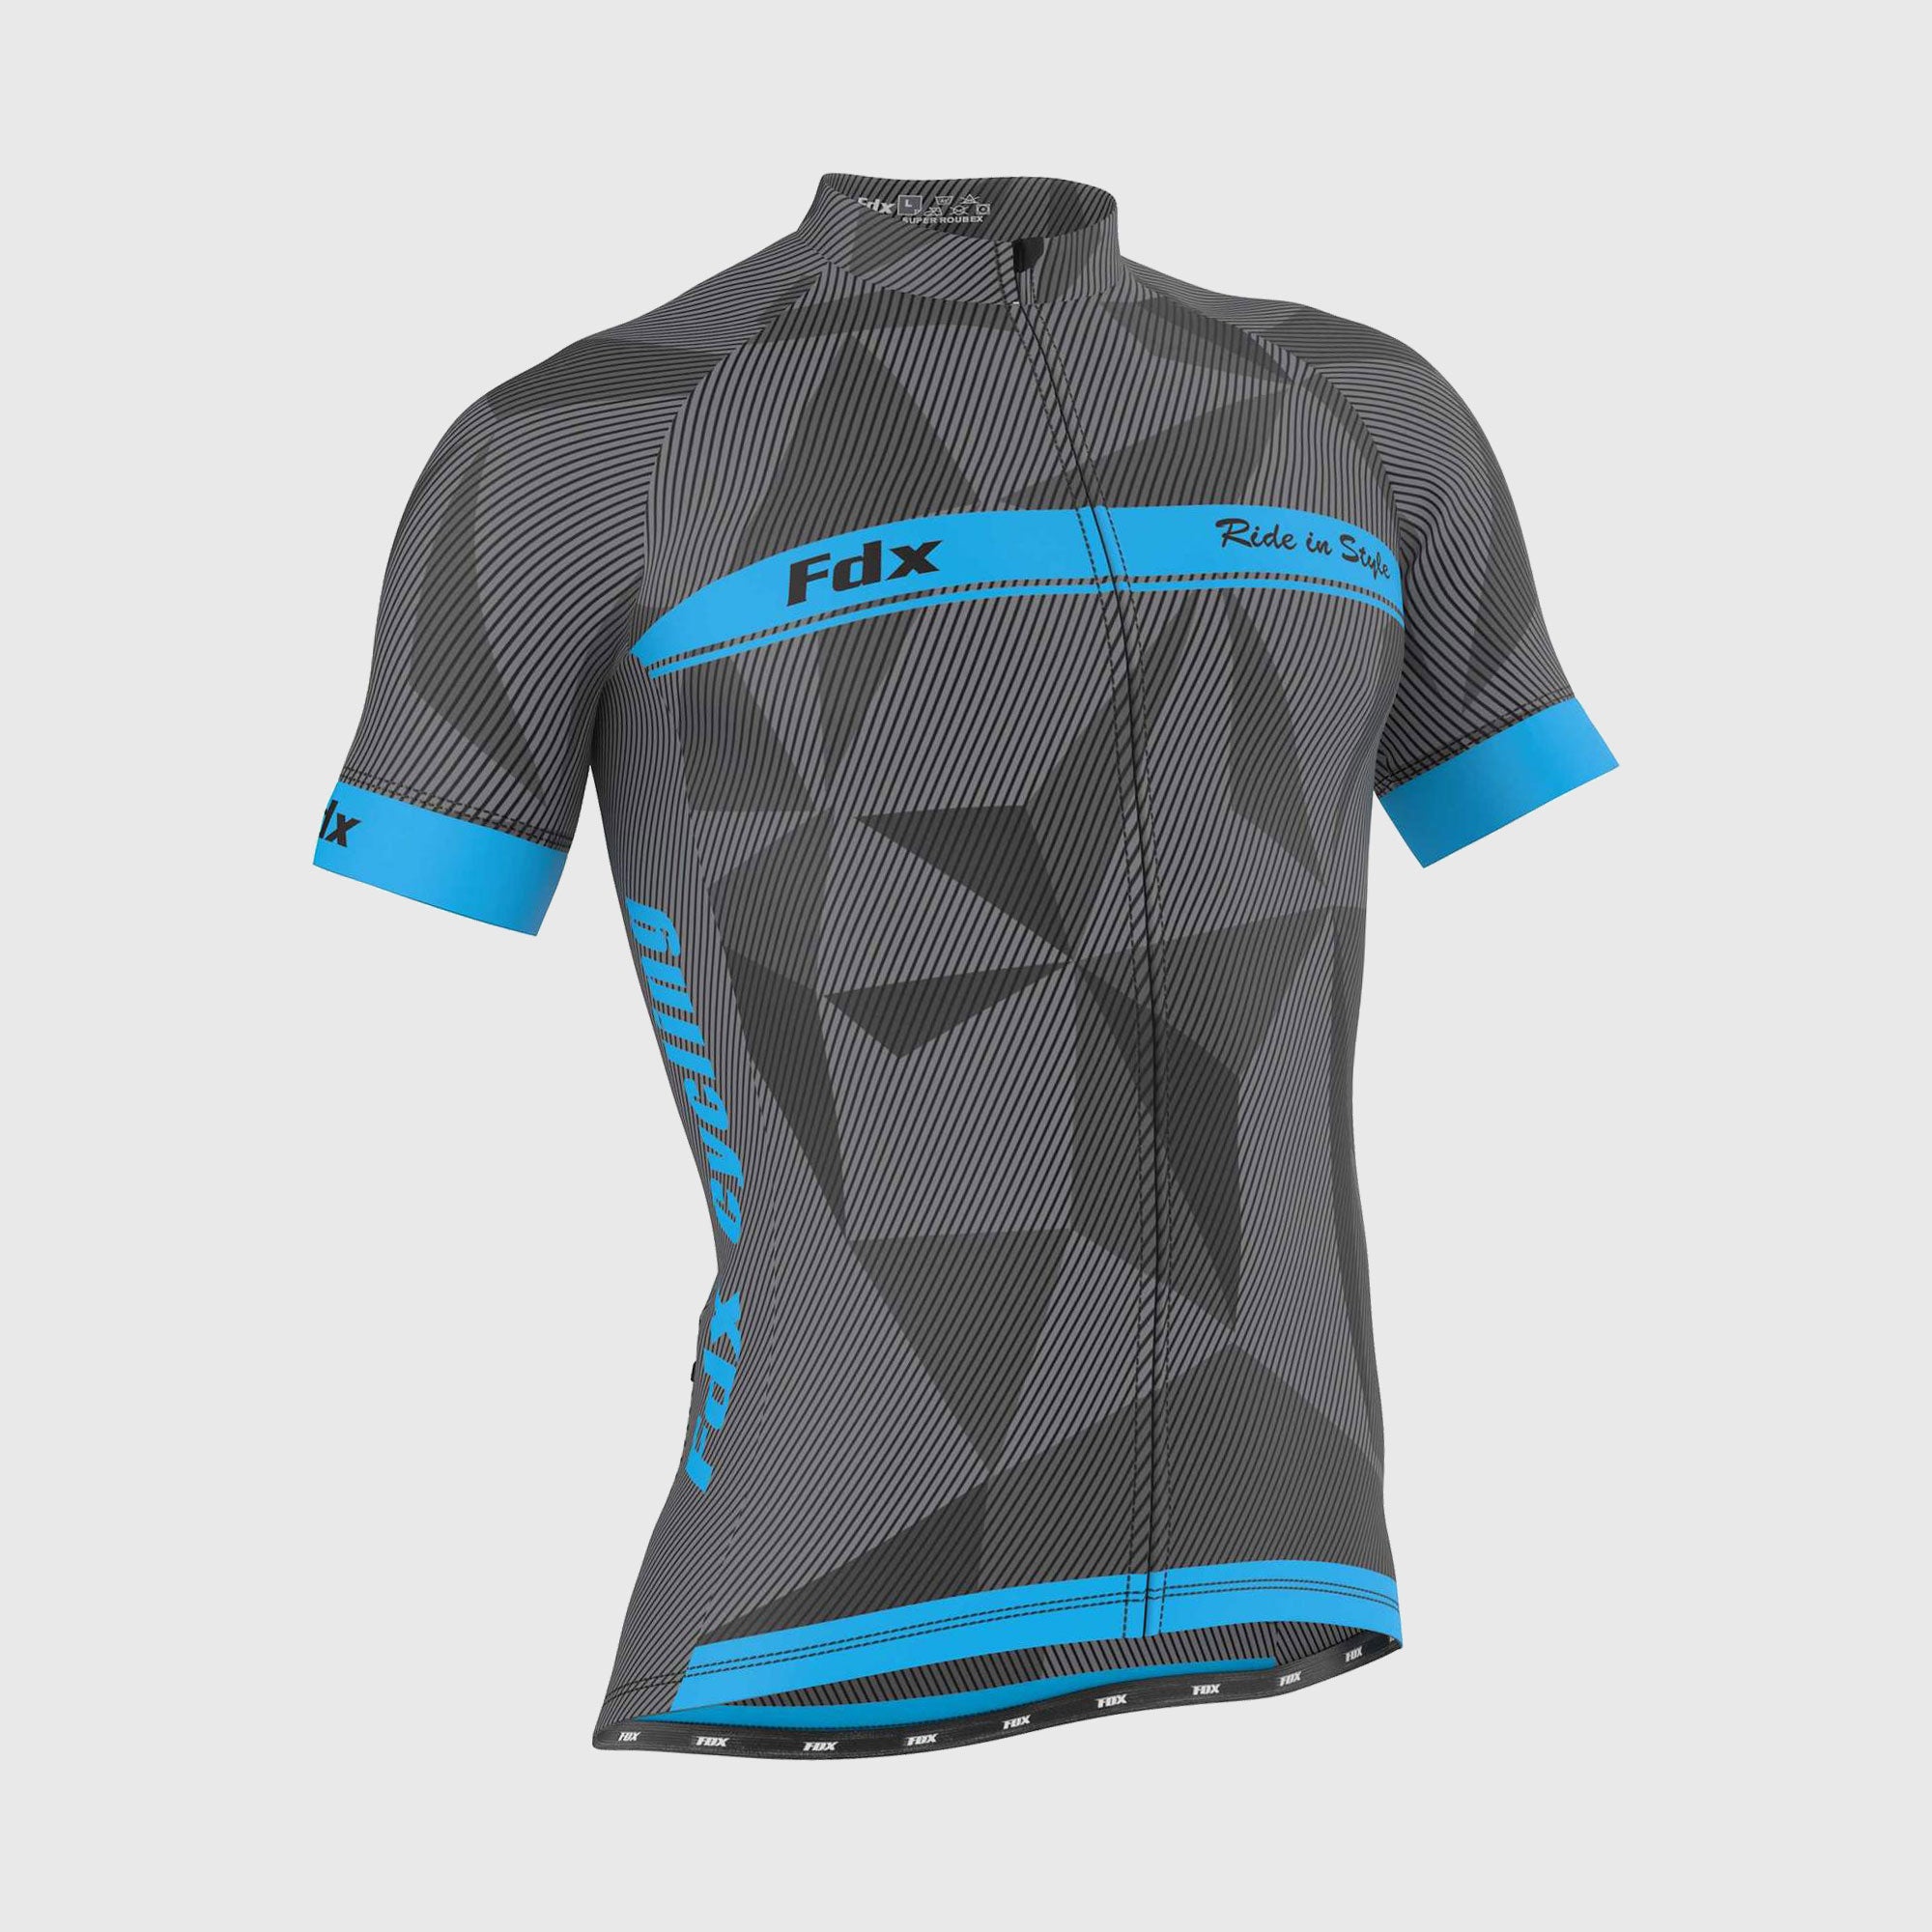 Fdx Mens Blue Short Sleeve Cycling Jersey for Summer Best Road Bike Wear Top Light Weight, Full Zipper, Pockets & Hi-viz Reflectors - Splinter